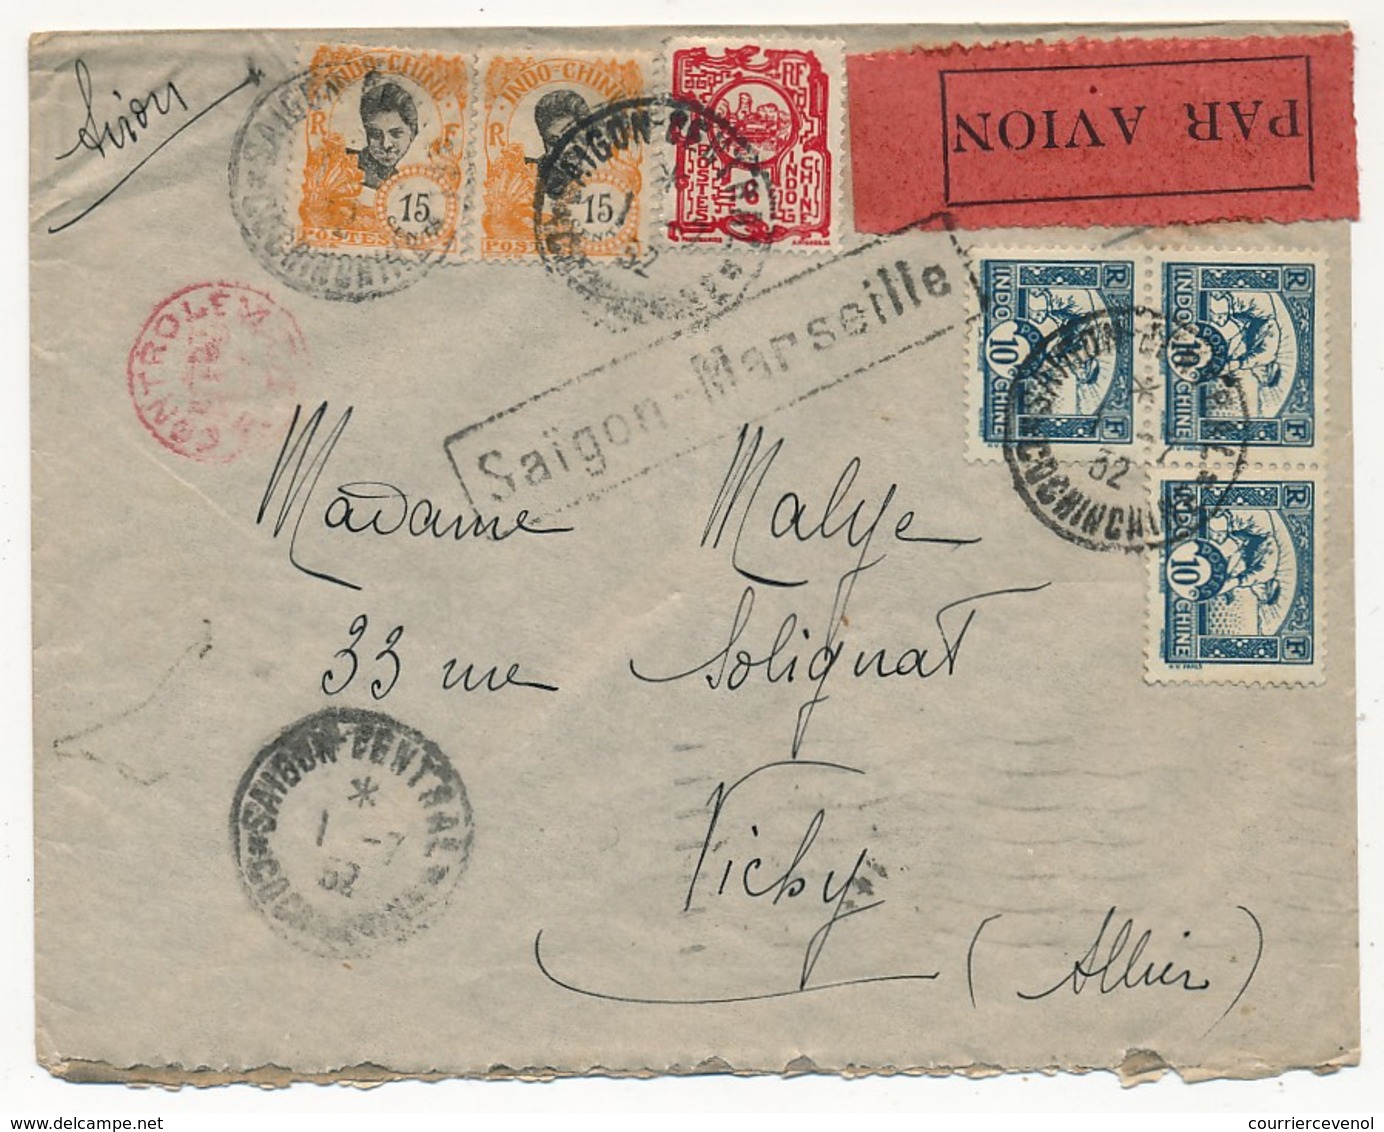 INDOCHINE - Lot de 10 lettres diverses 1932 à 1940, recommandée, avions, aérogrammes...